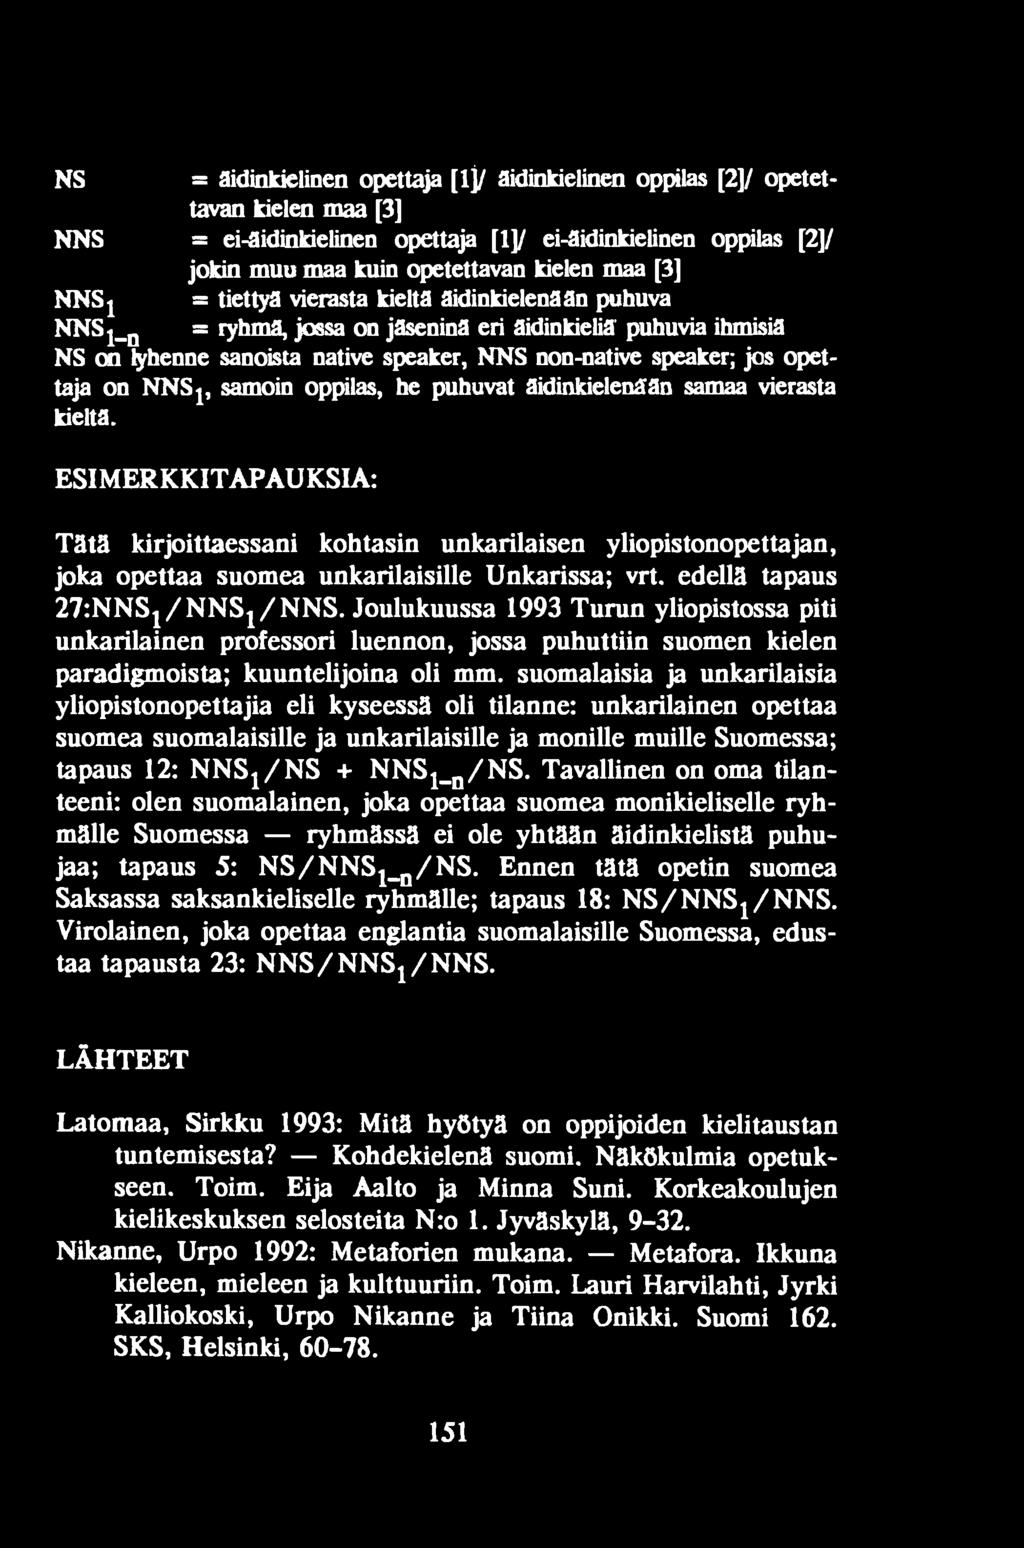 Joulukuussa 1993 Turun yliopistossa piti unkarilainen professori luennon, jossa puhuttiin suomen kielen paradigmoista; kuuntelijoina oli mm.